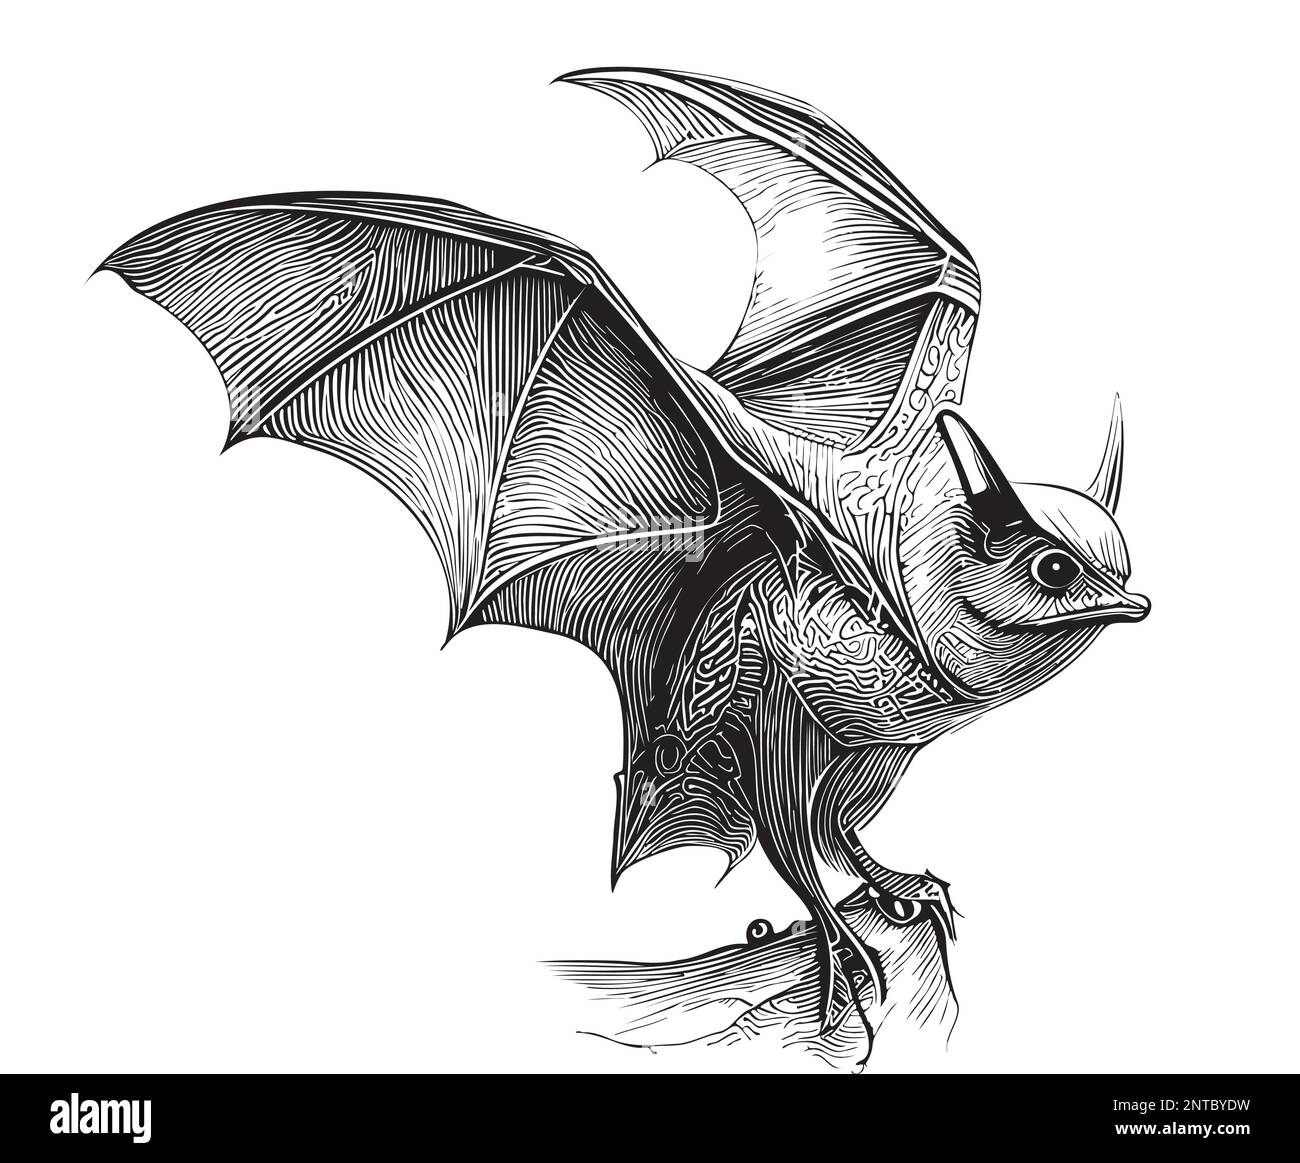 20 moldes de morcego para Halloween - Como fazer em casa  Halloween  stencils, Halloween silhouettes, Minimalist halloween